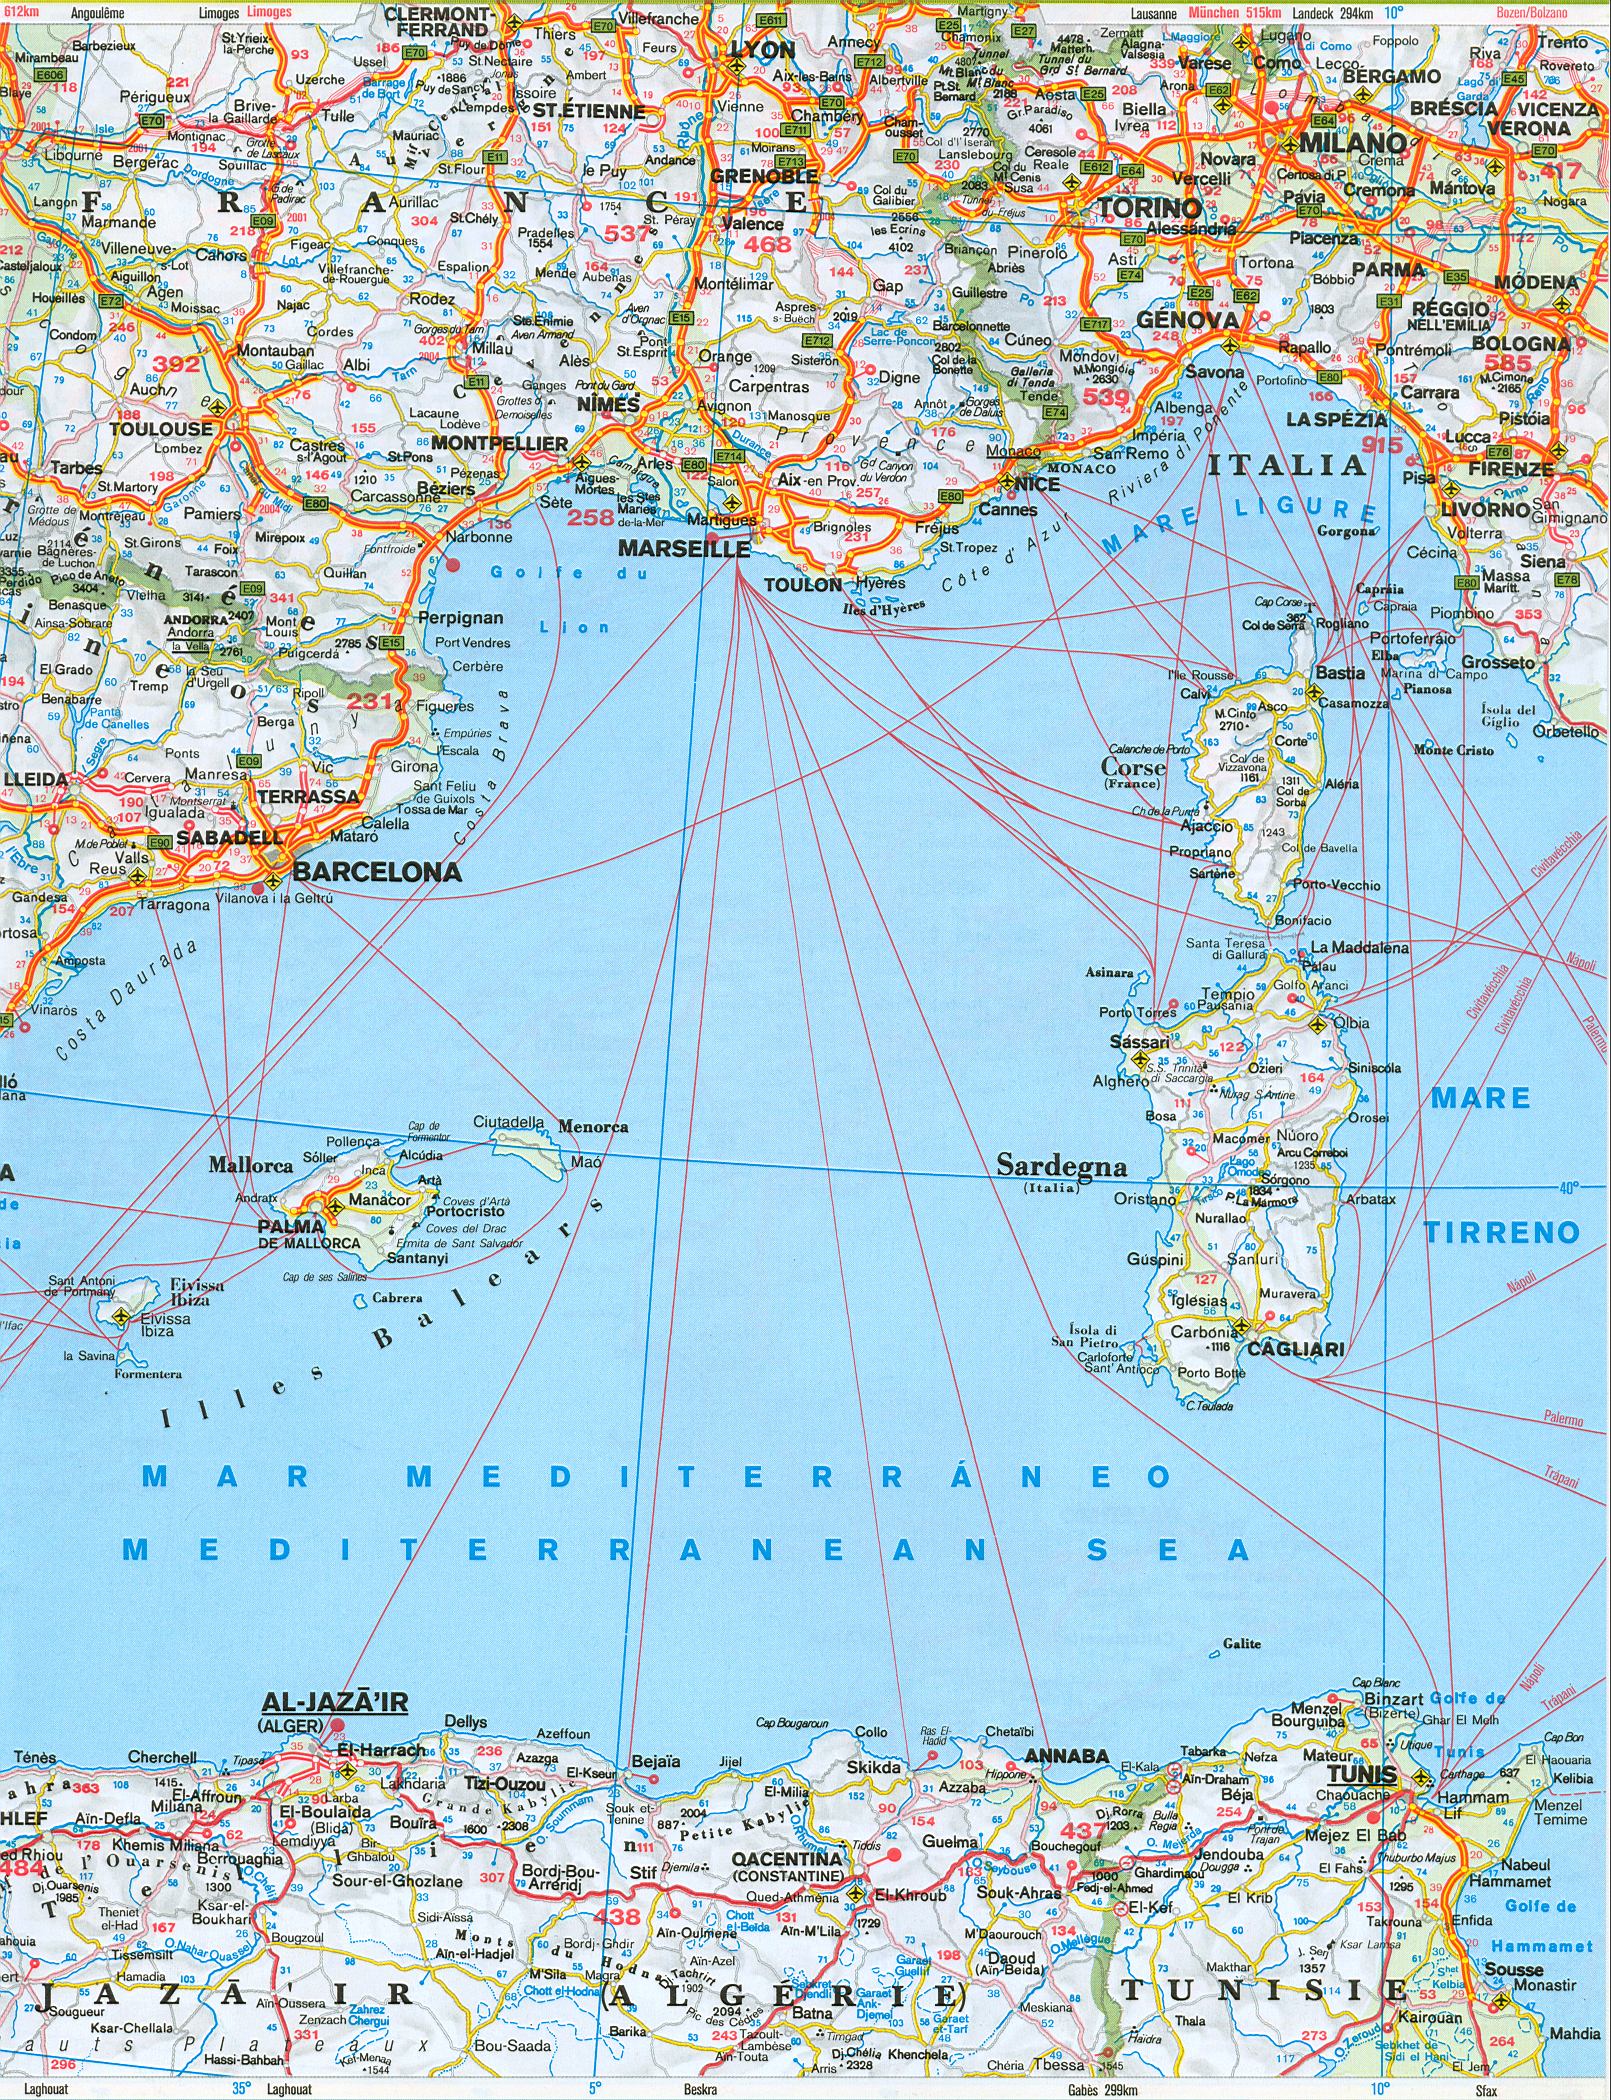  Карта дорог южной Европы. Подробная карта дорог южной Европы: Испания, Португалия, юг Франции . Скачать бесплатно, B0 - 